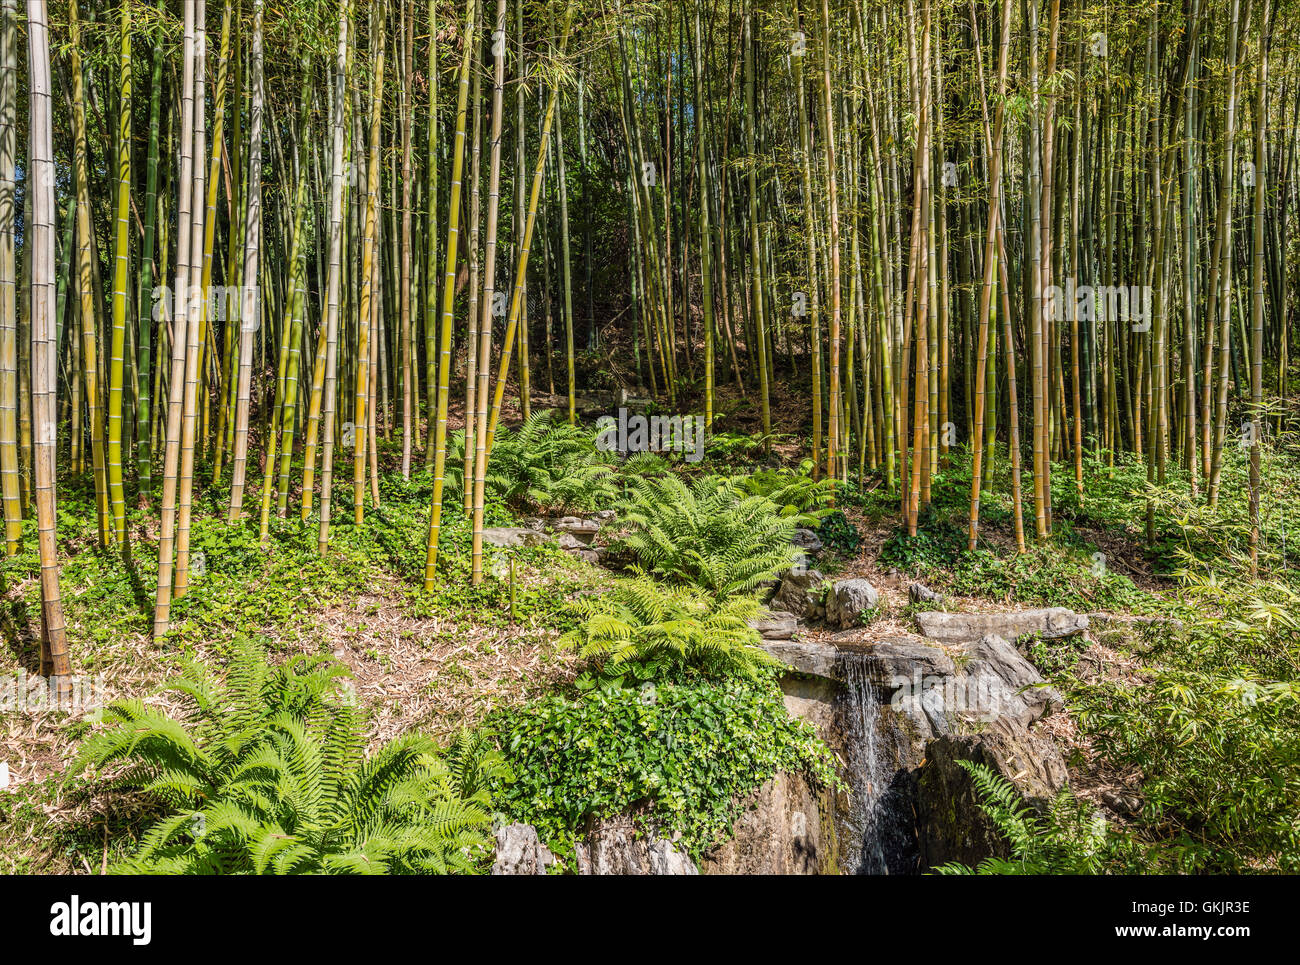 Bamboo Garden at the Botanical Garden of Villa Carlotta, Tremezzina, Lake Como, Lombardy, Italy Stock Photo